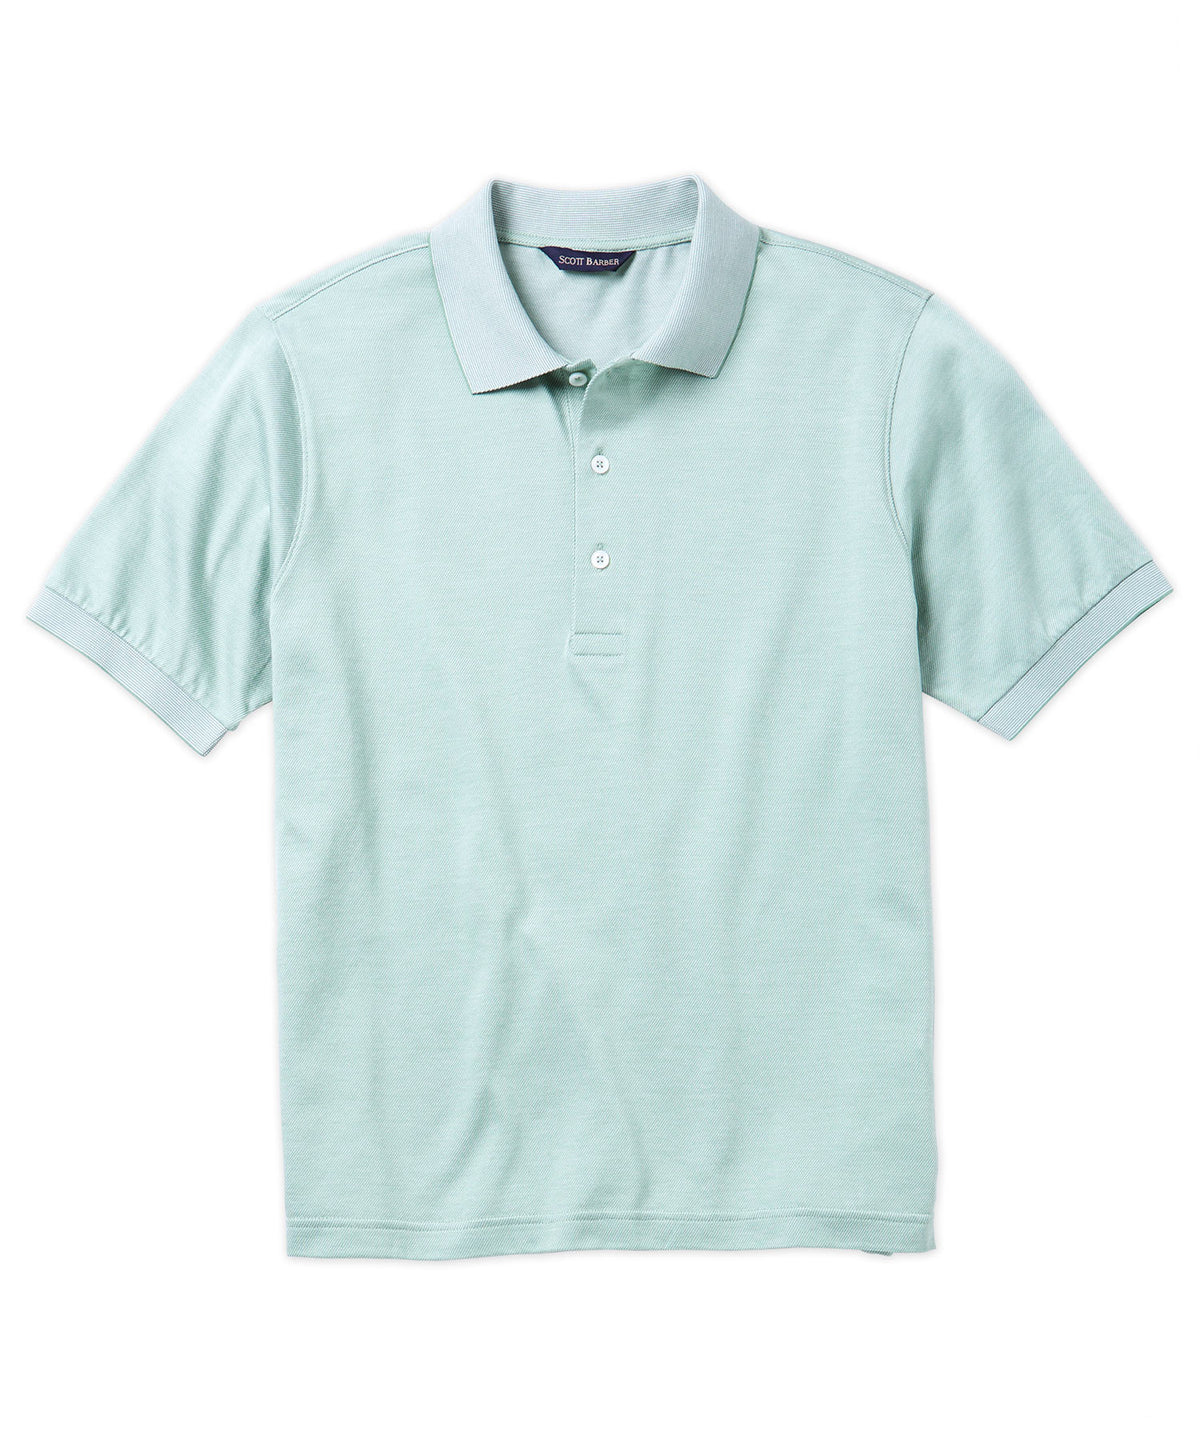 Twill Knit Jersey Polo Shirt